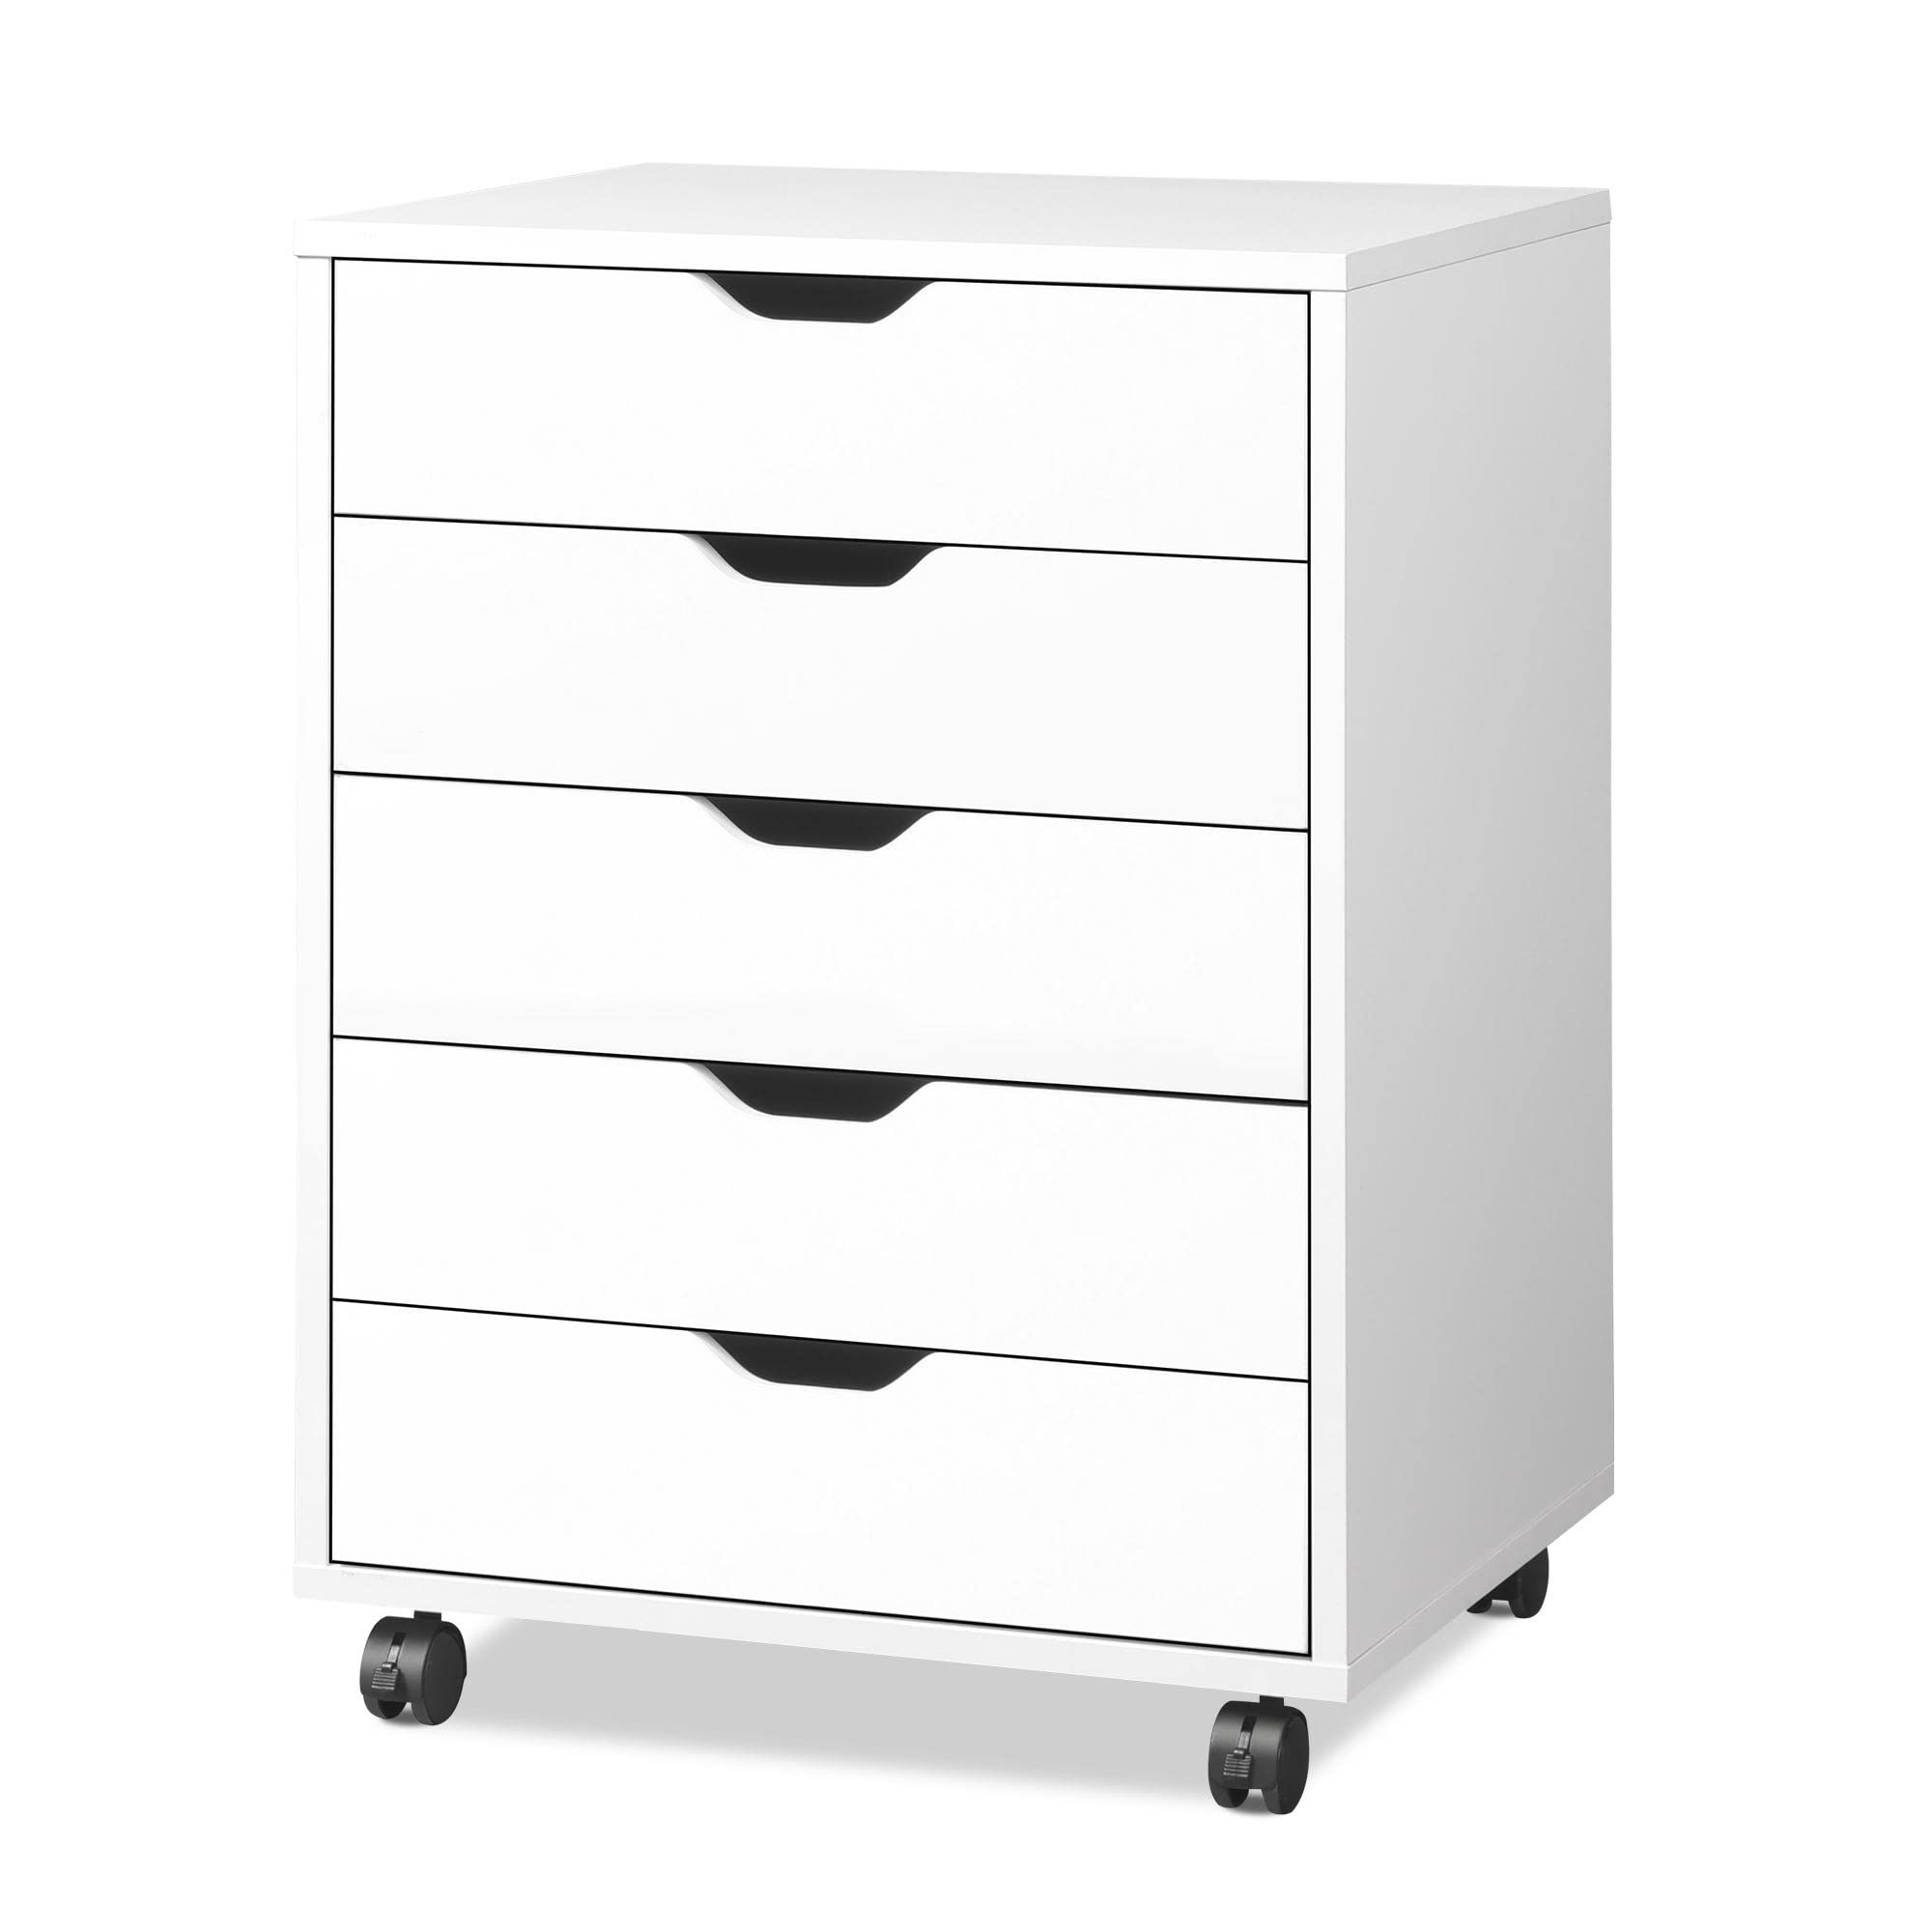 DEVAISE 5-Drawer Chest, Wood Storage Dresser Cabinet with Wheels, White | Amazon (US)